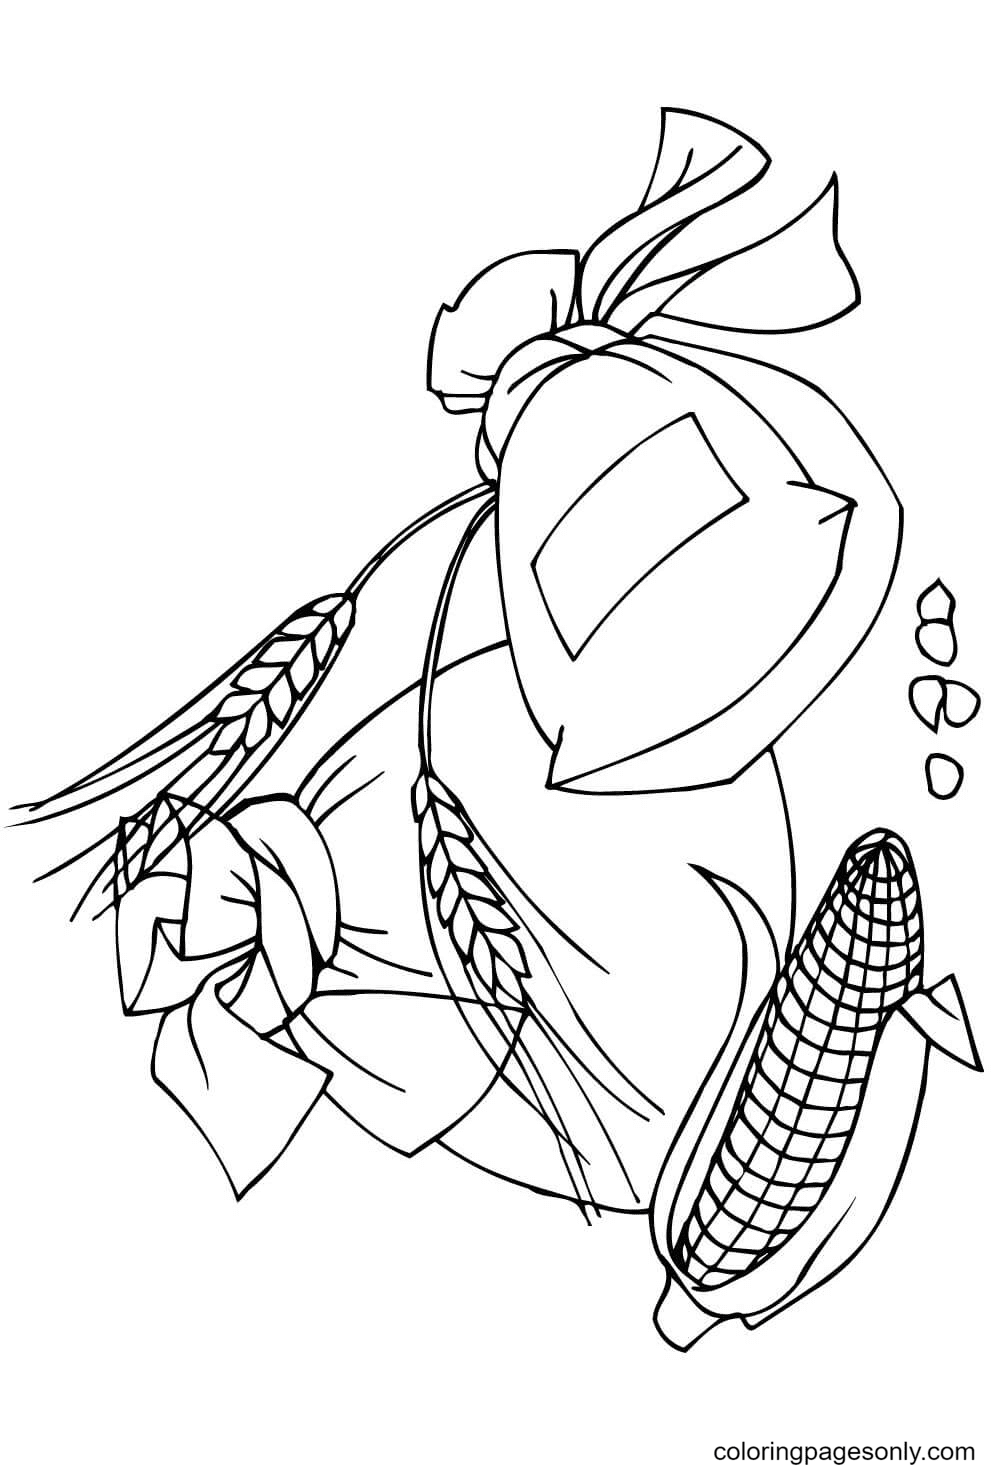 Desenho de espigas de espiga de milho e sacos de farinha para colorir